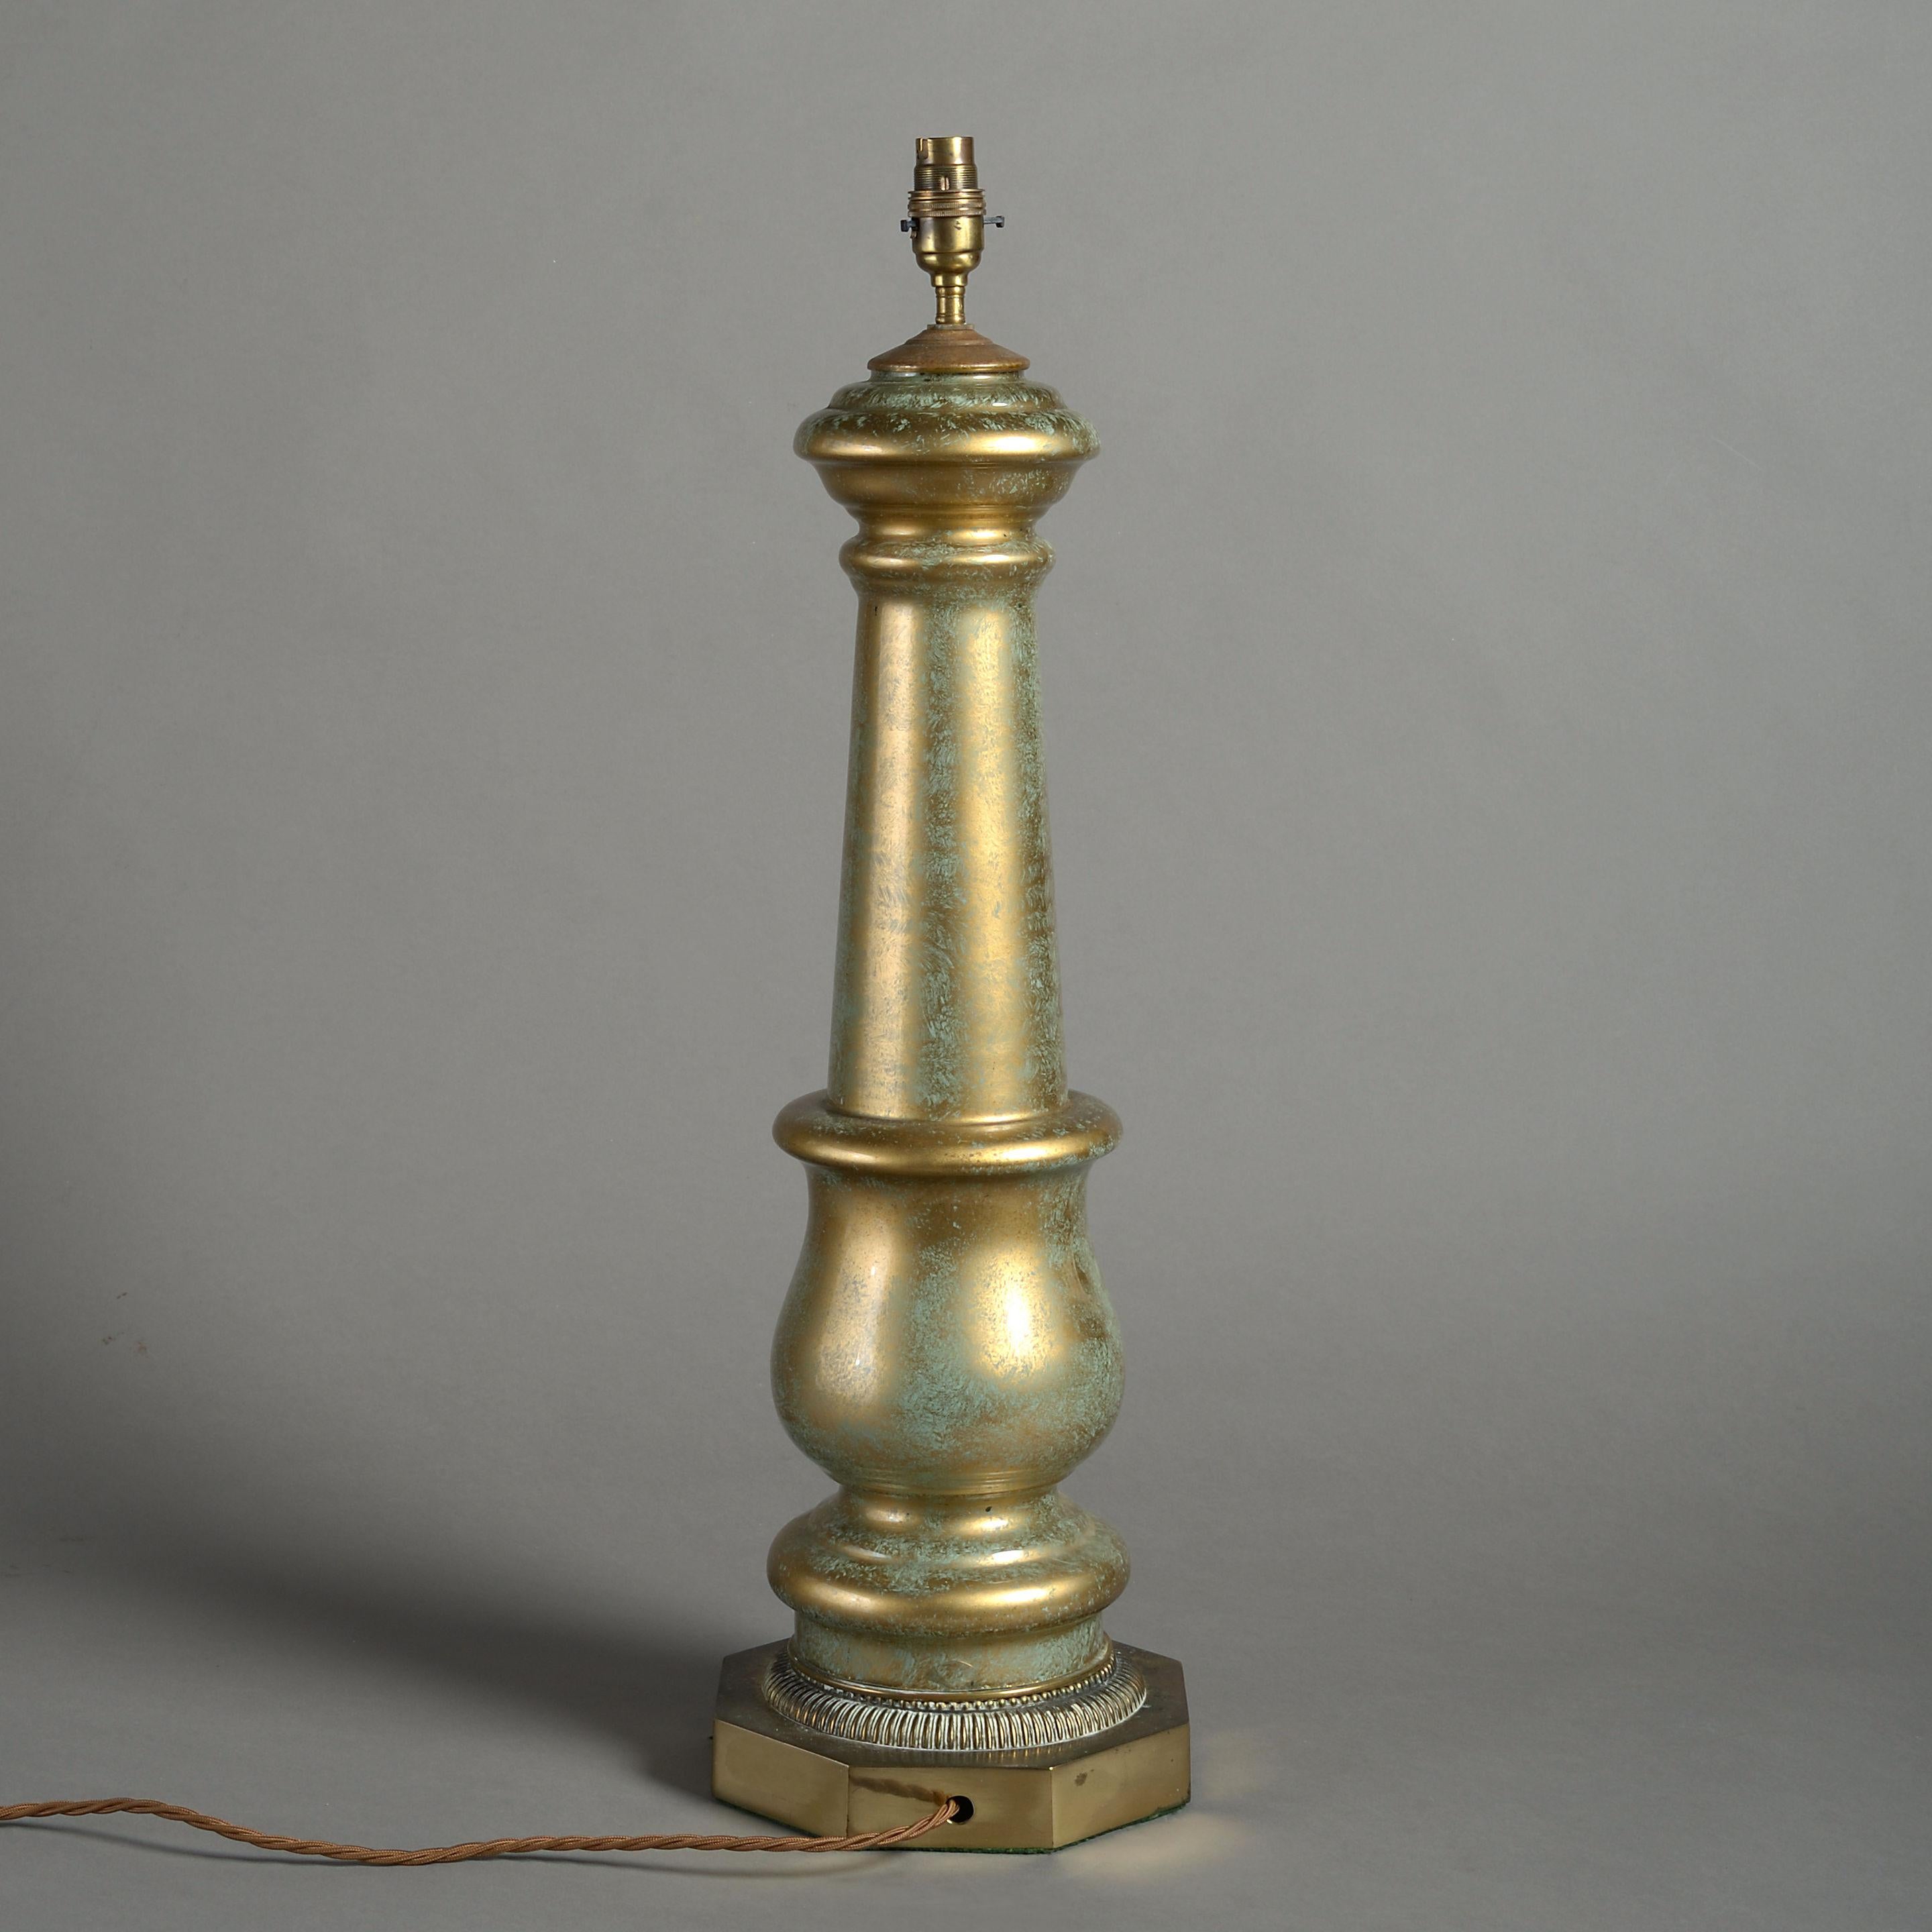 Lampe de table en verre églomisé du début du 20e siècle de bonne taille, décorée d'une figure féminine classique, de guirlandes et reposant sur une base octogonale.